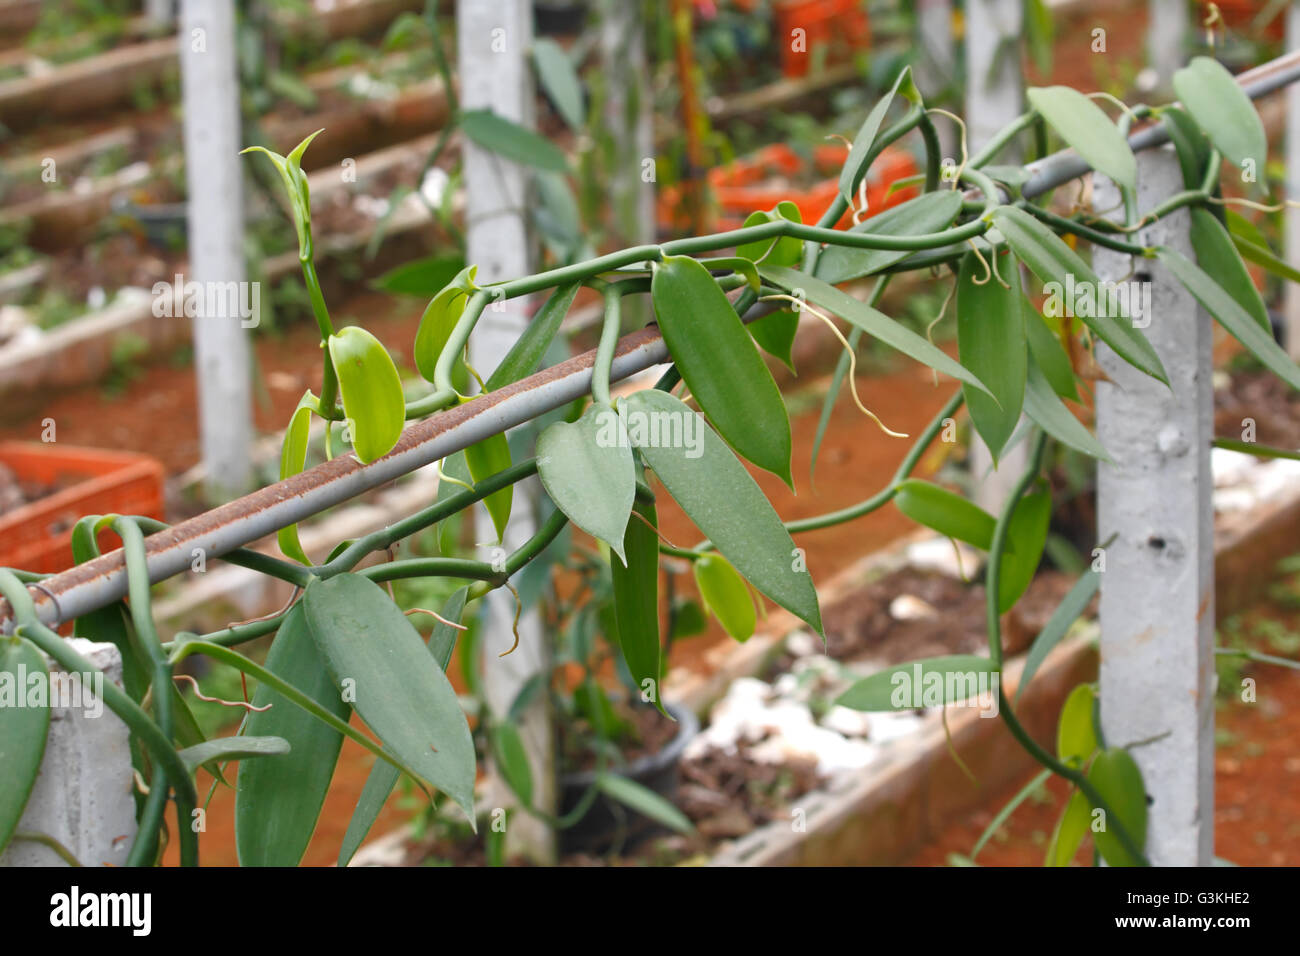 Granja de cultivo de vainilla, Vanilla planifolia (orquídea) sembrar para cosechar los frutos para extraer el aroma de vainilla. Foto de stock